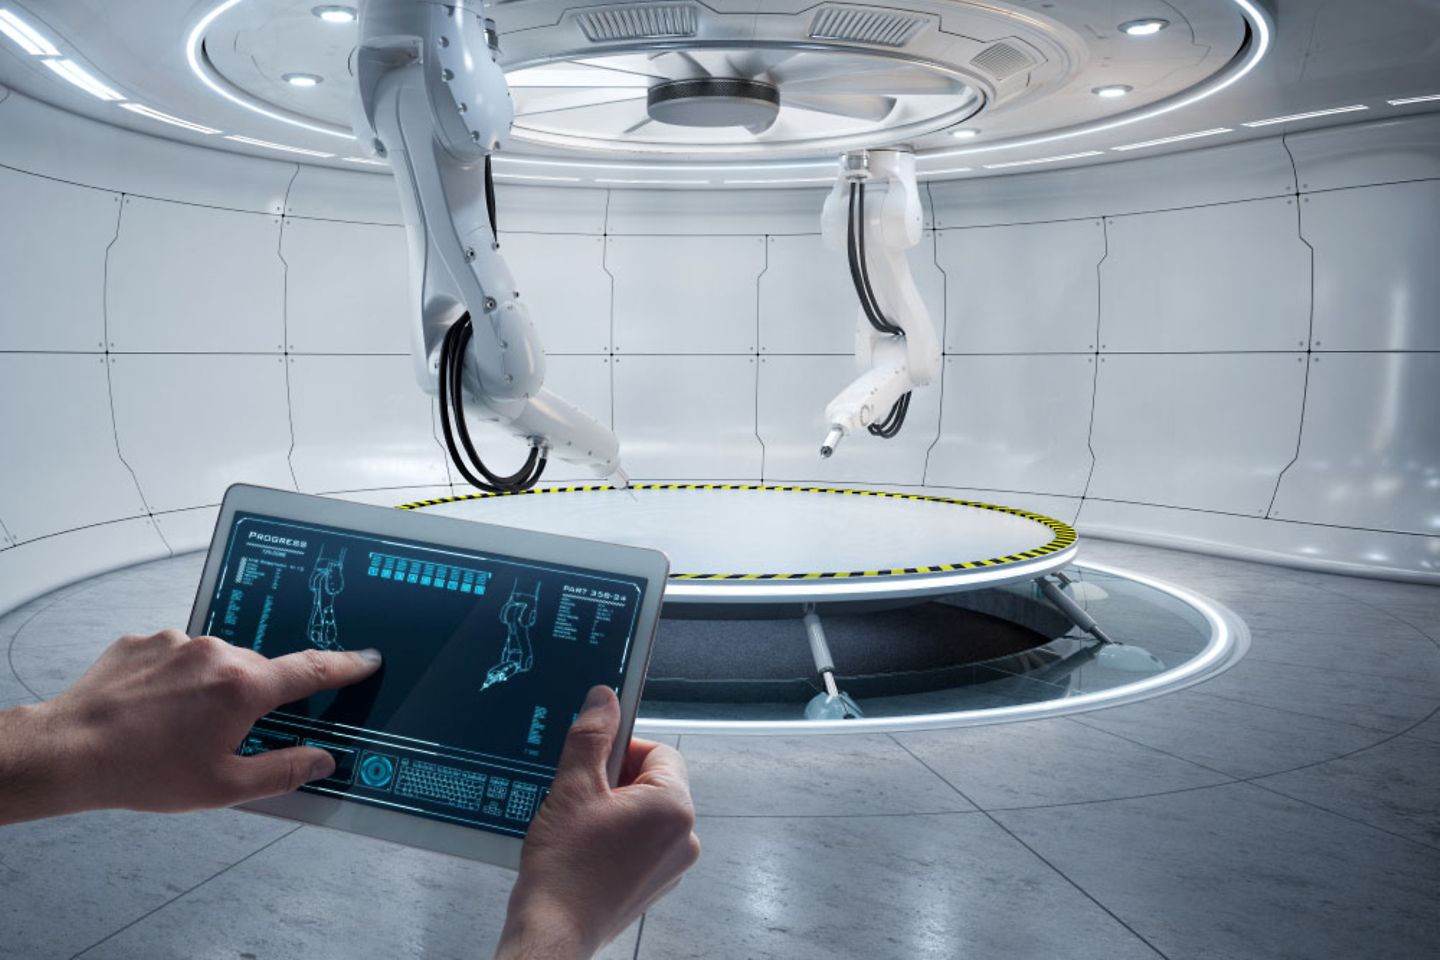 centro de producción futurista con robots controlados desde una tableta